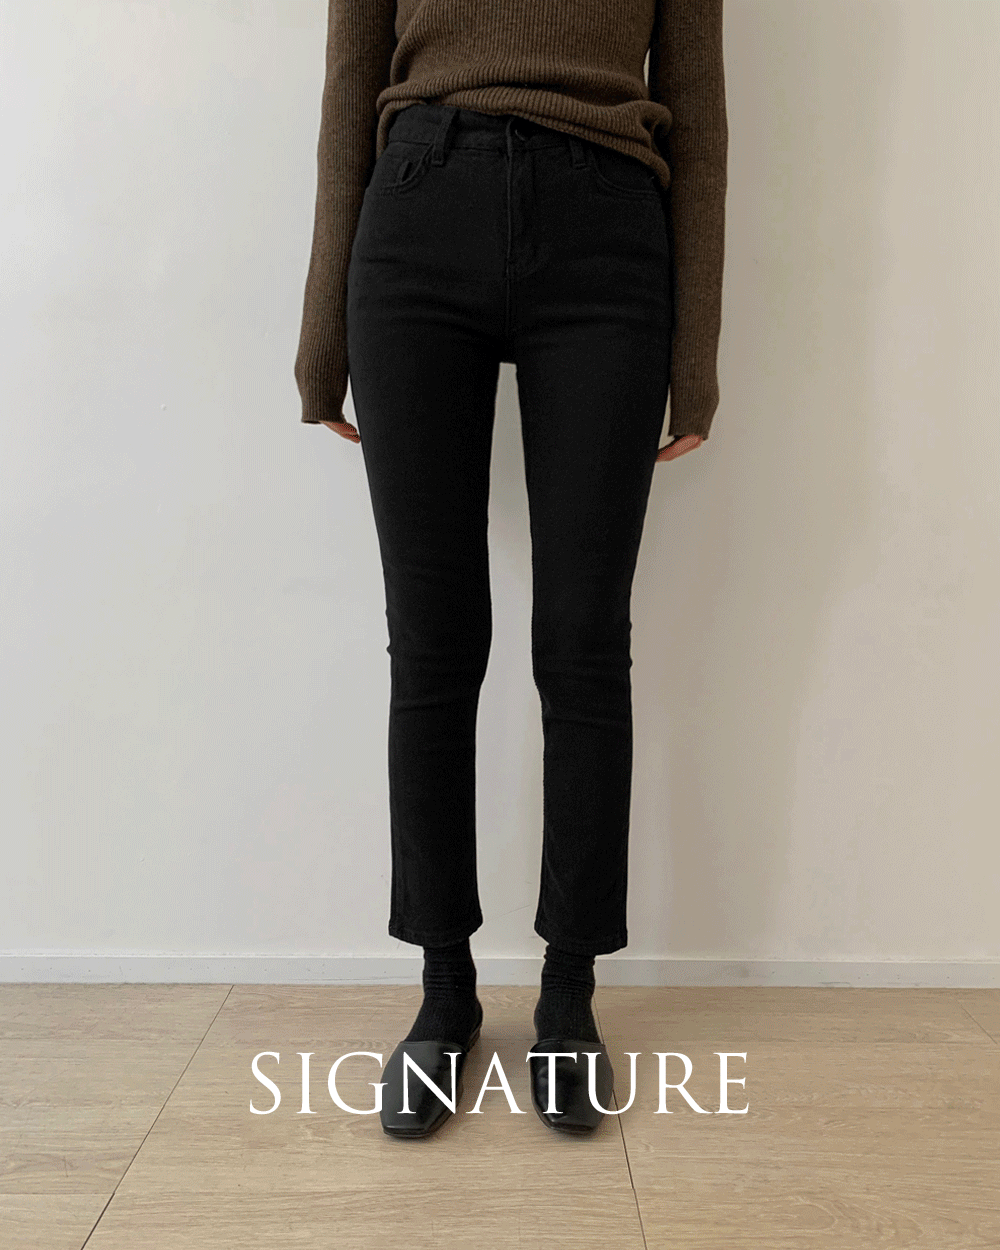 Signature black jeans